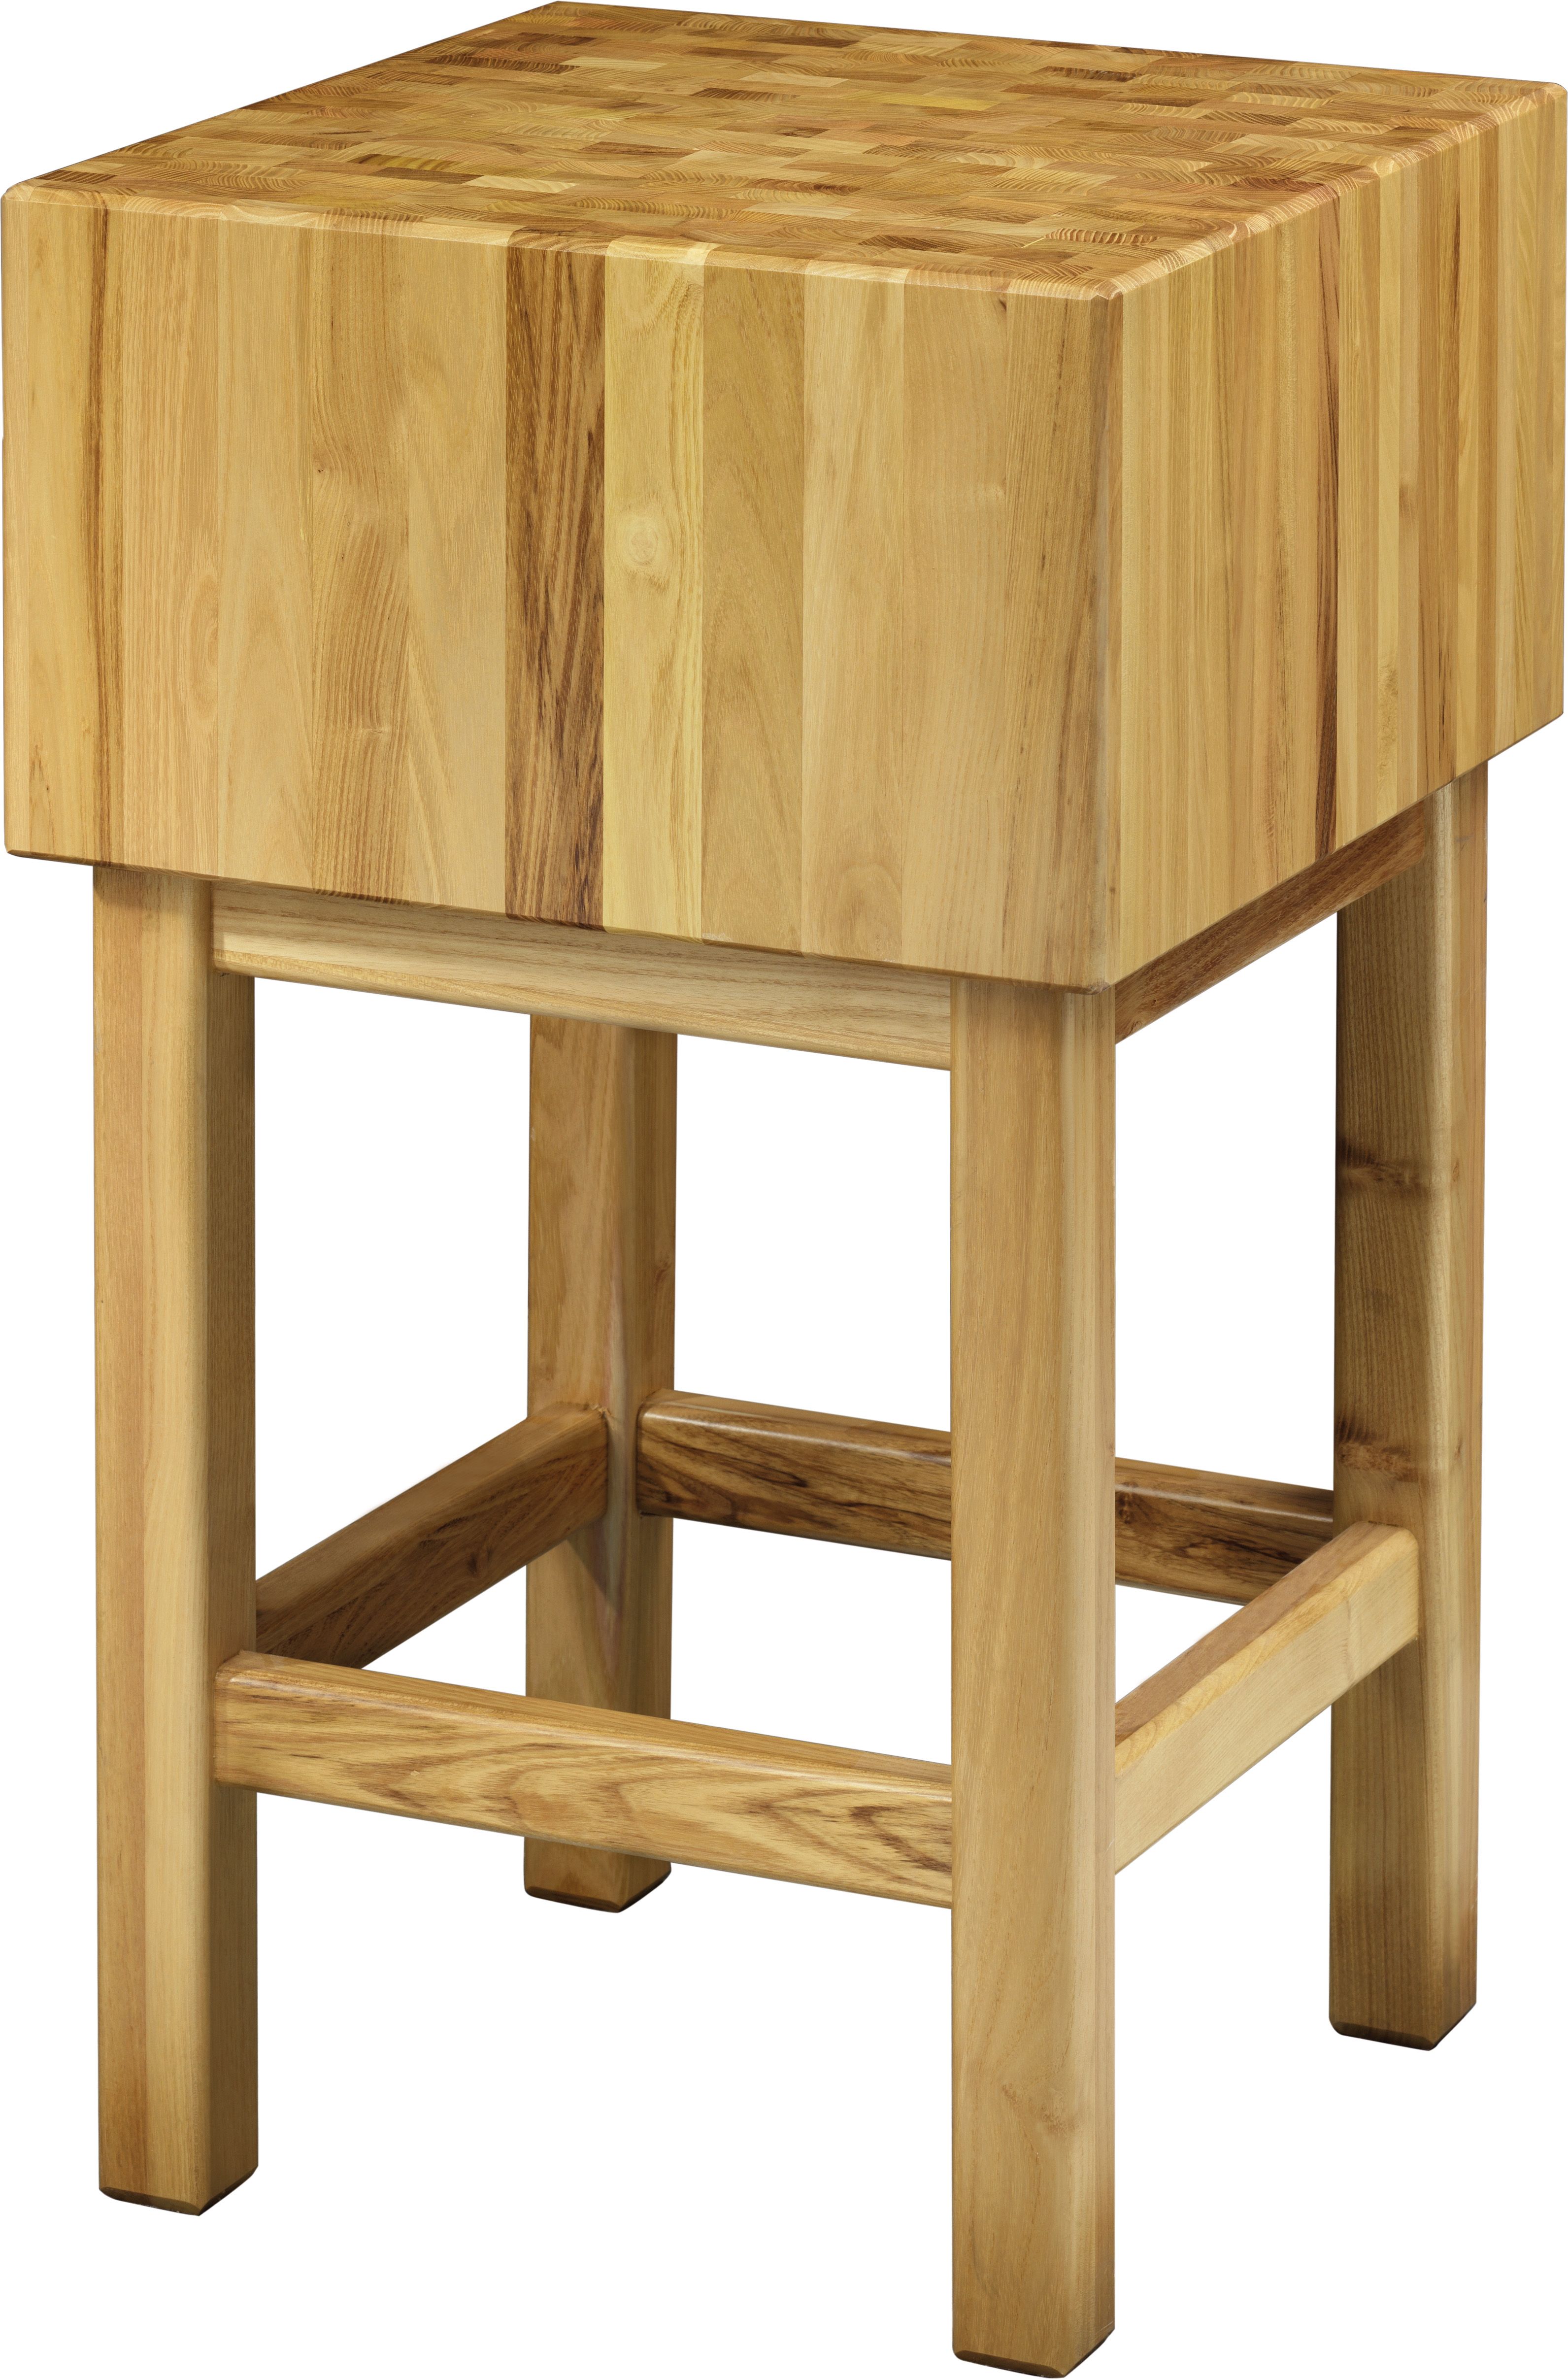 Hackblock – Holz – Stärke 17 cm – Untergestell Masse 70 x 40 x 90 cm